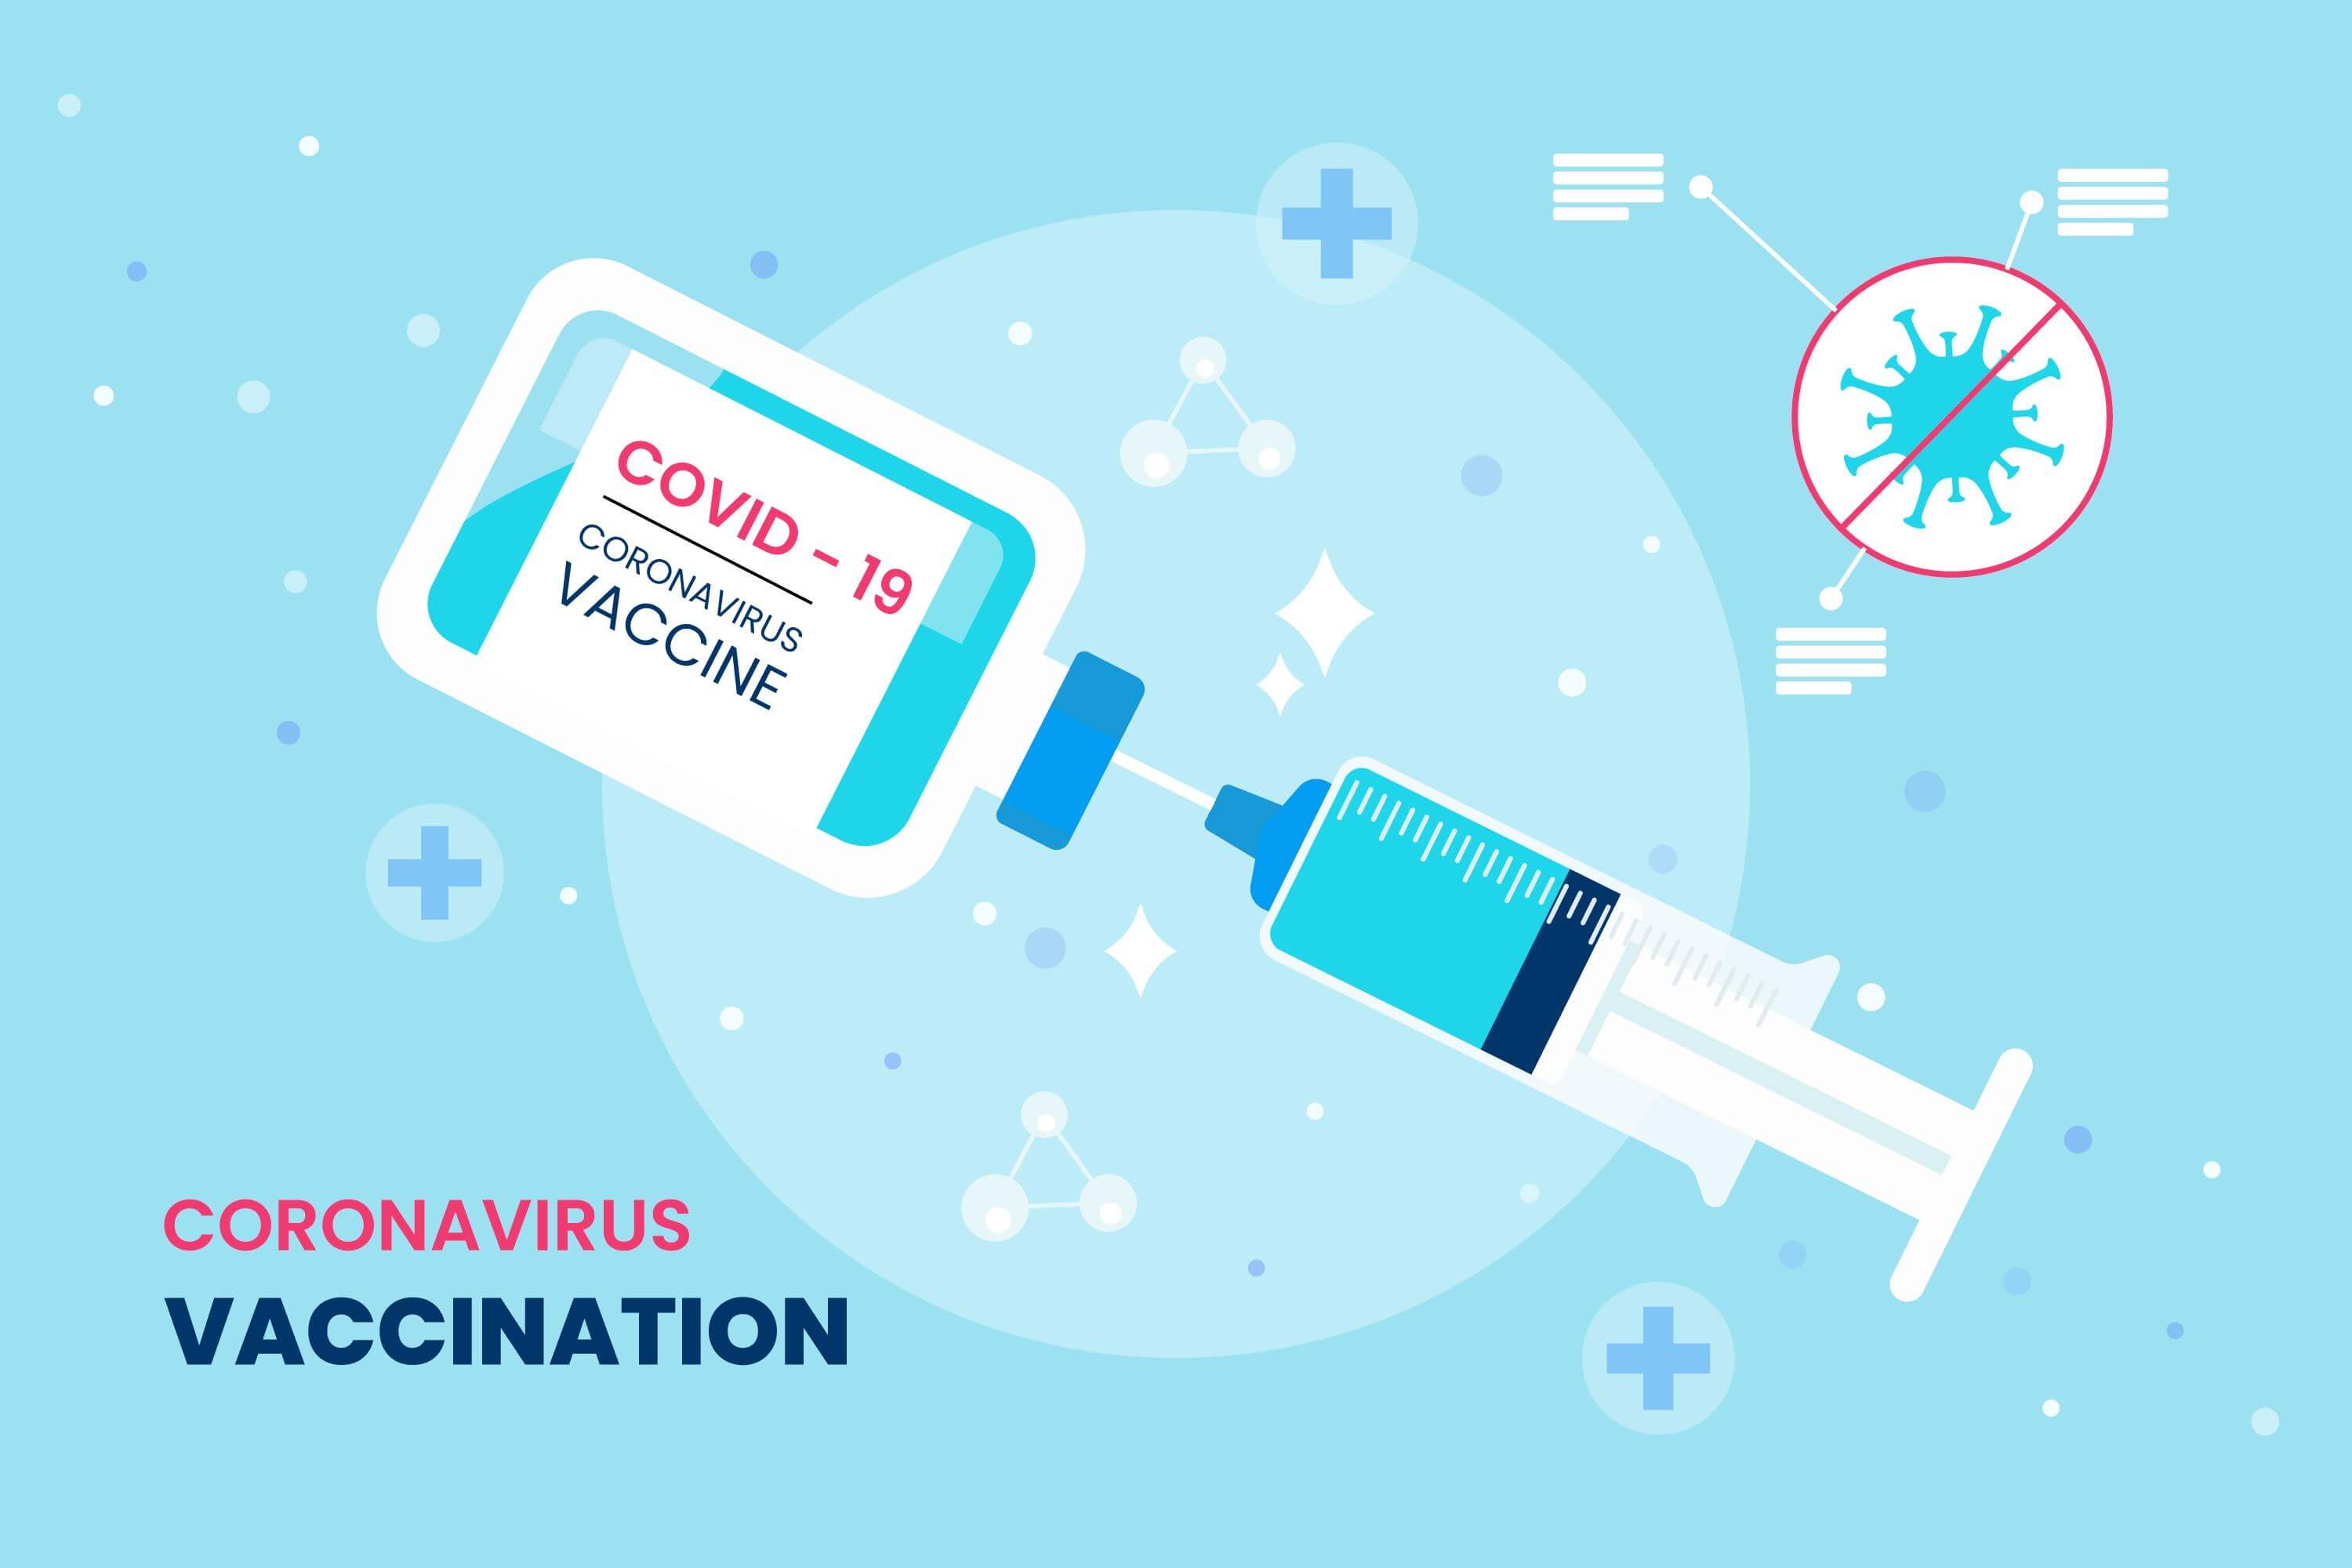 Vaccine Covid-19 hoạt động như thế nào?